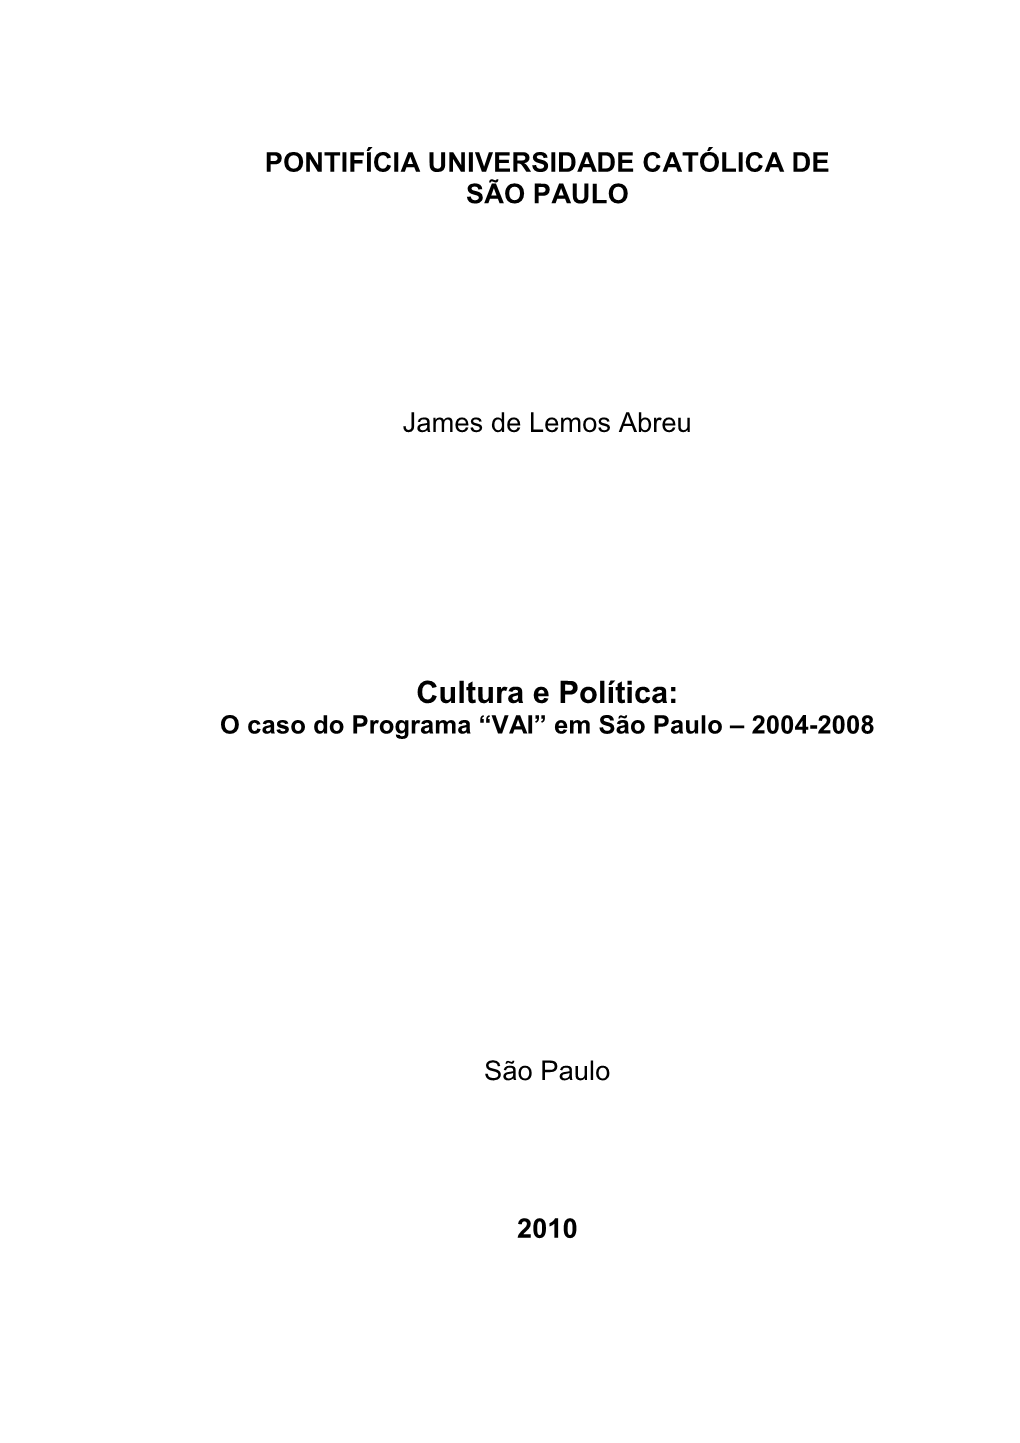 Cultura E Política: O Caso Do Programa “VAI” Em São Paulo – 2004-2008